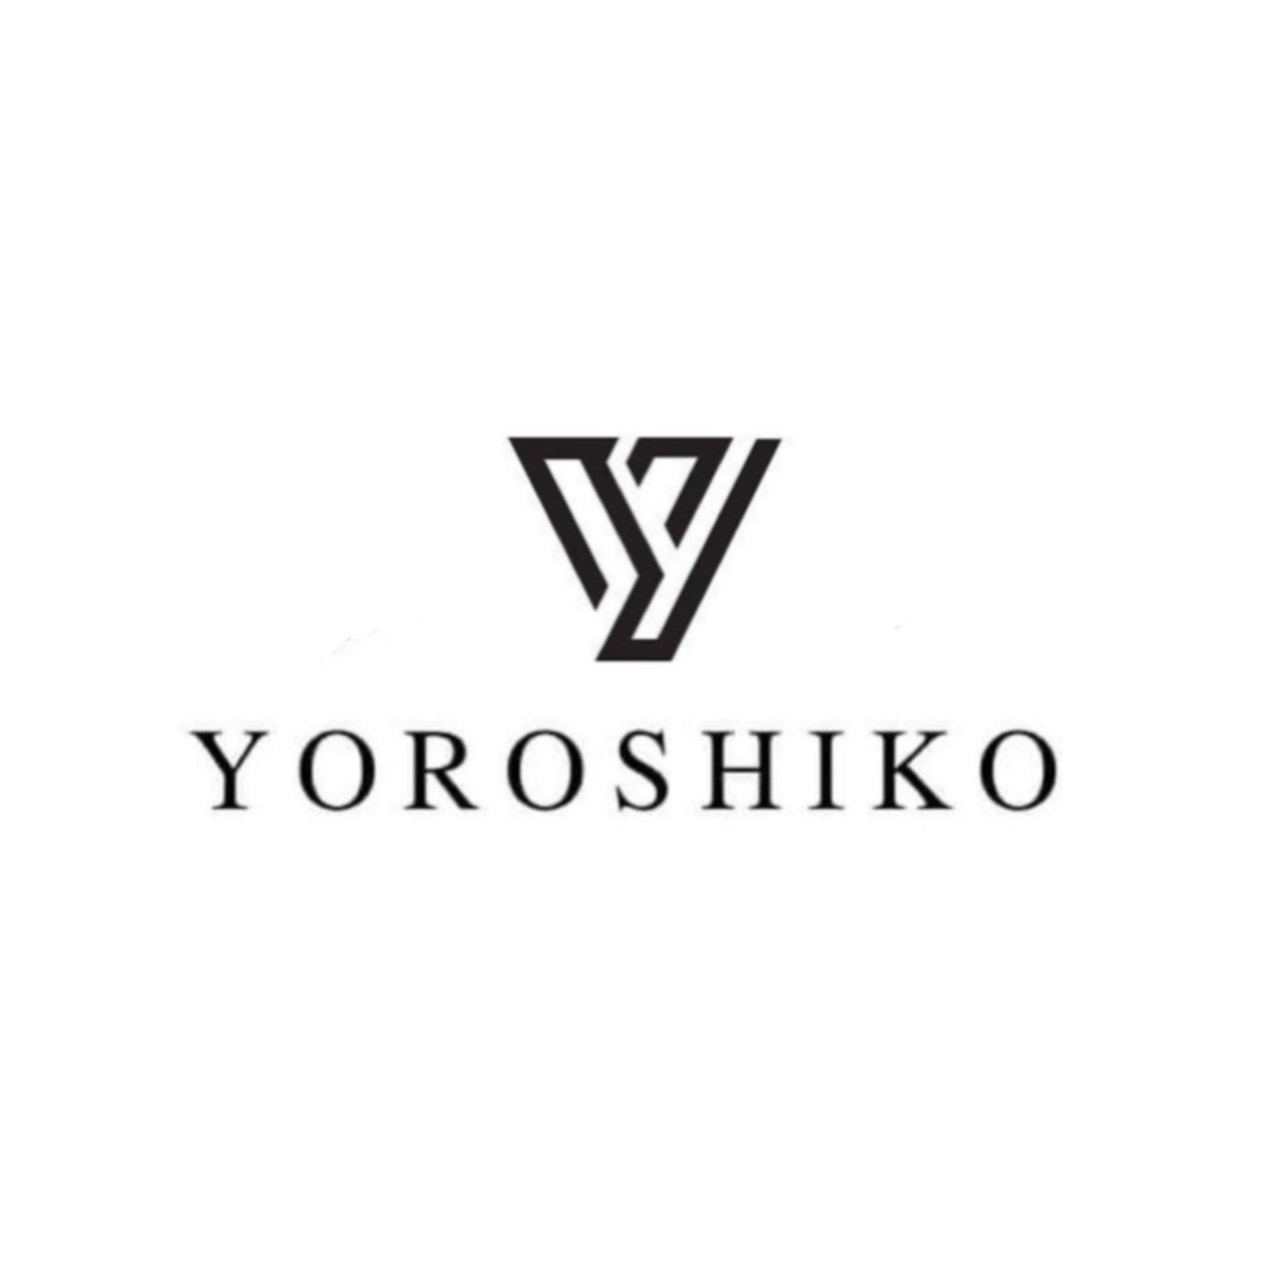 Yoroshiko.